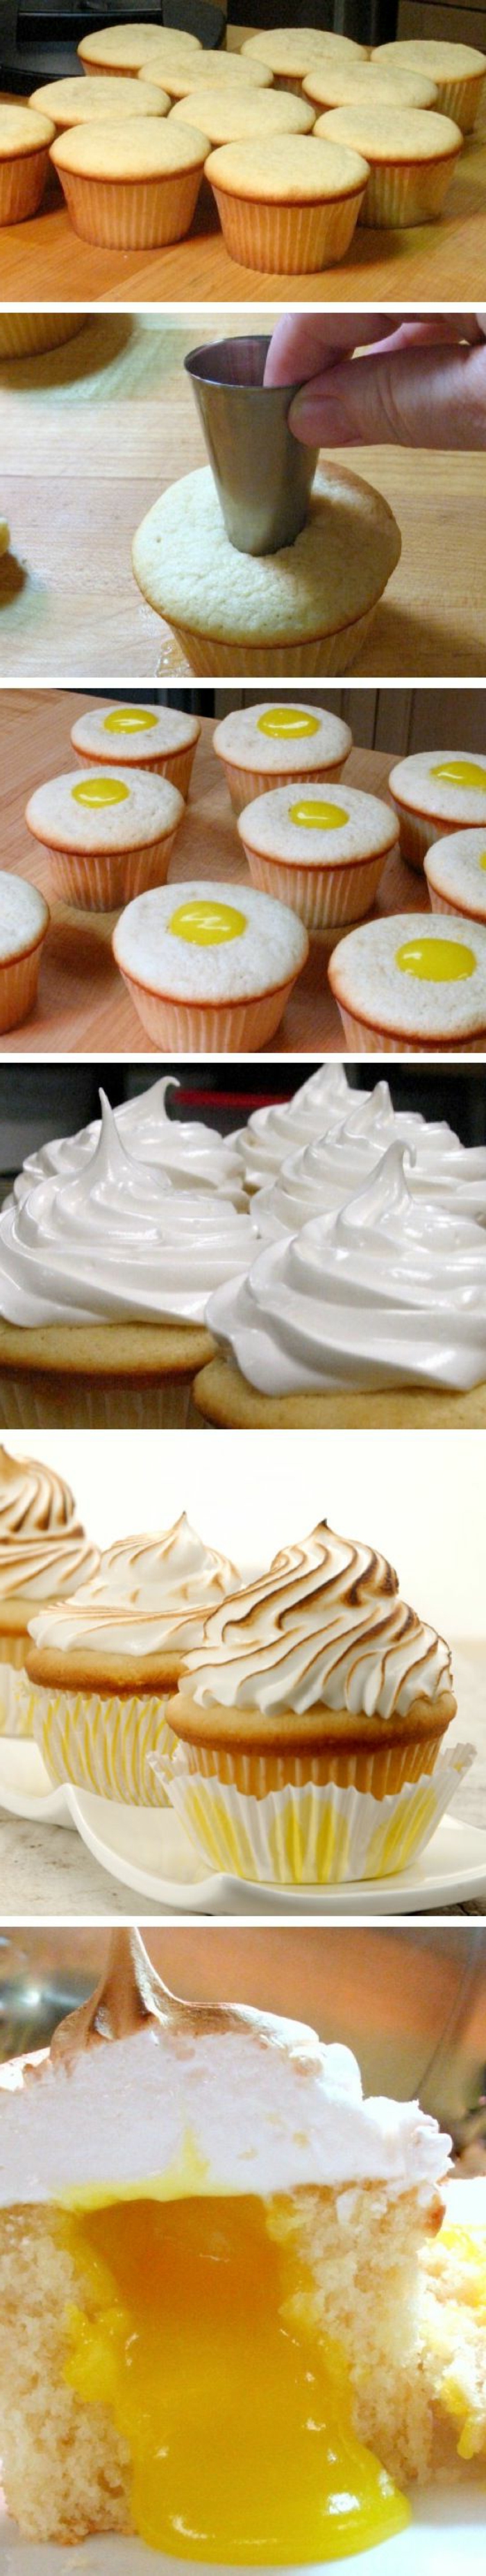 recette cupcake facile à la vanille avec meringue citron, idée comment préparer des cupcakes étape par étape